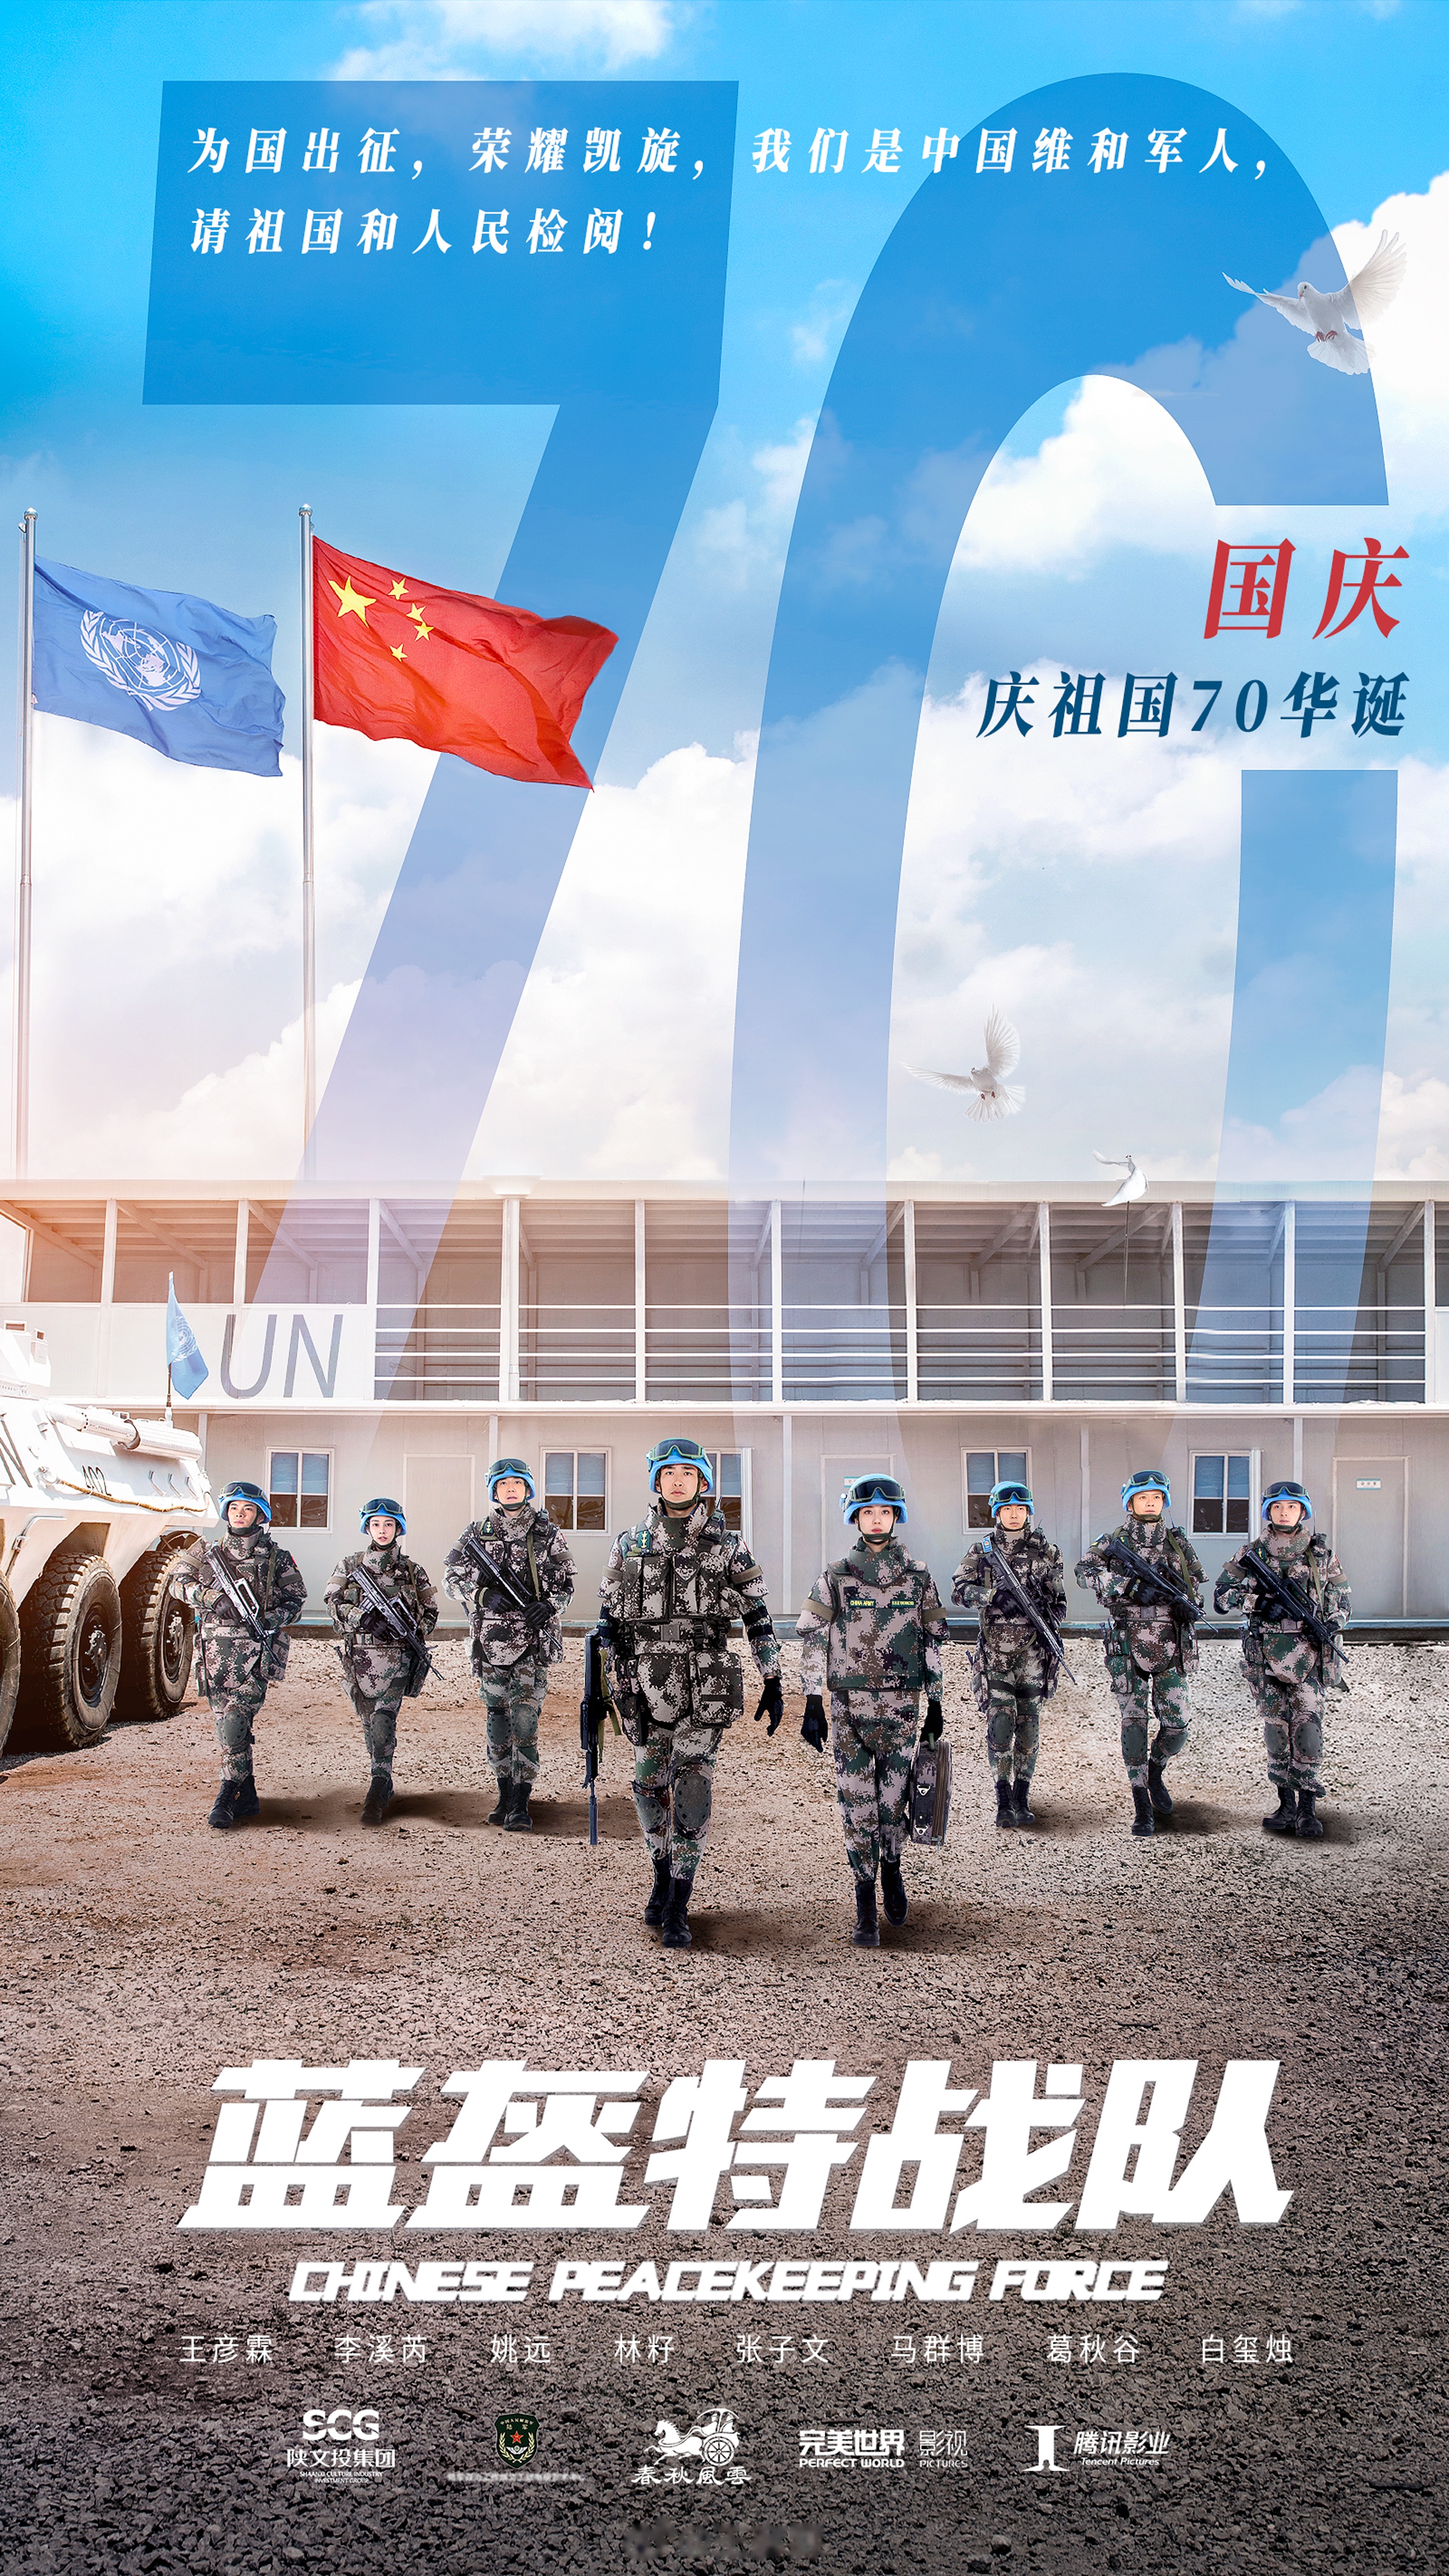 共庆祖国七十华诞!维和部队首次受阅,世界和平有中国蓝盔!